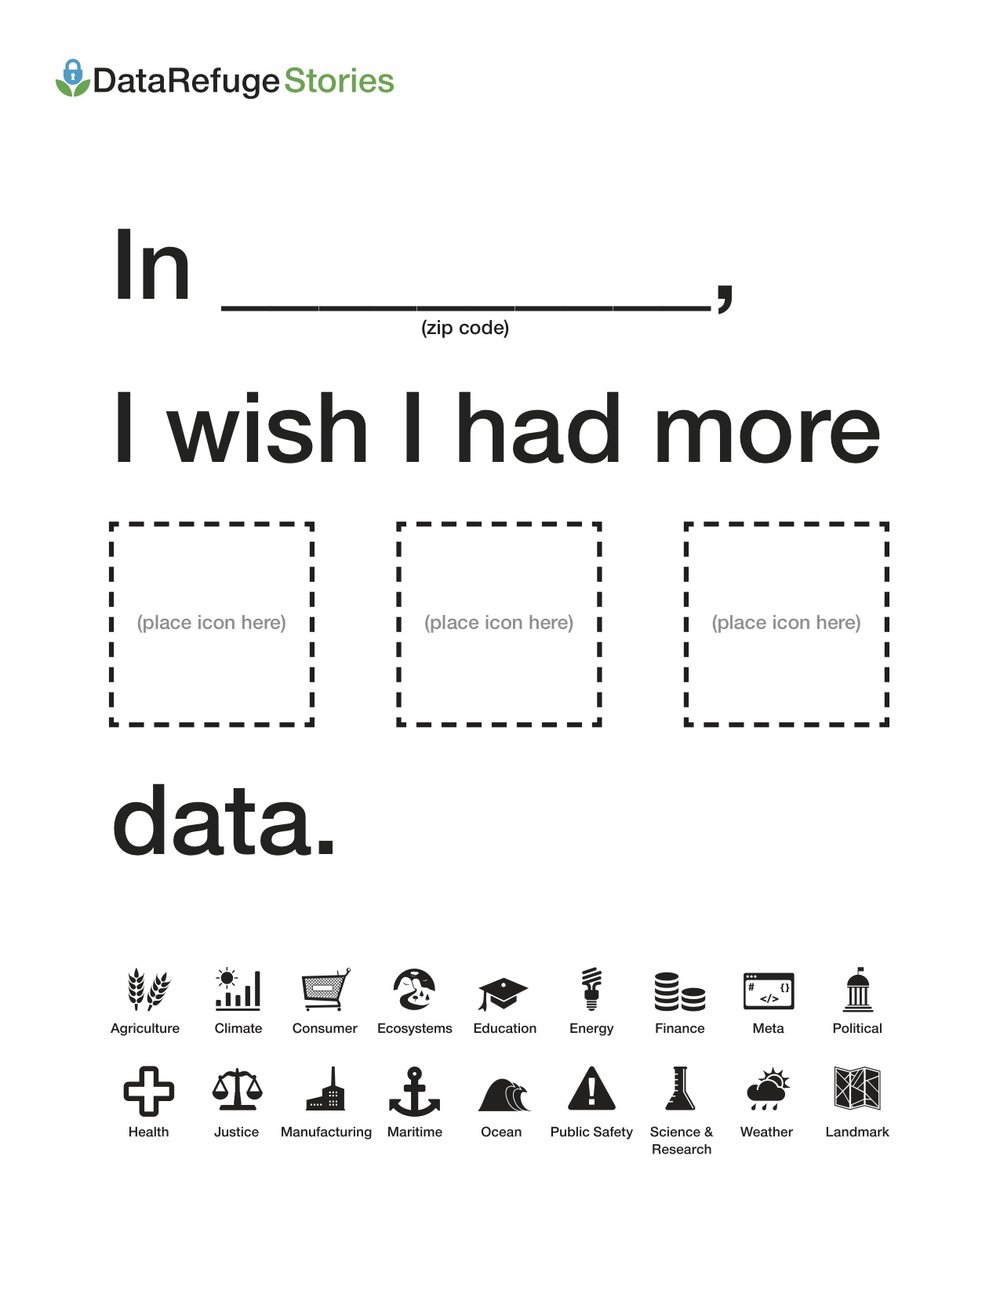 Data.Gov Wishes Form.jpg